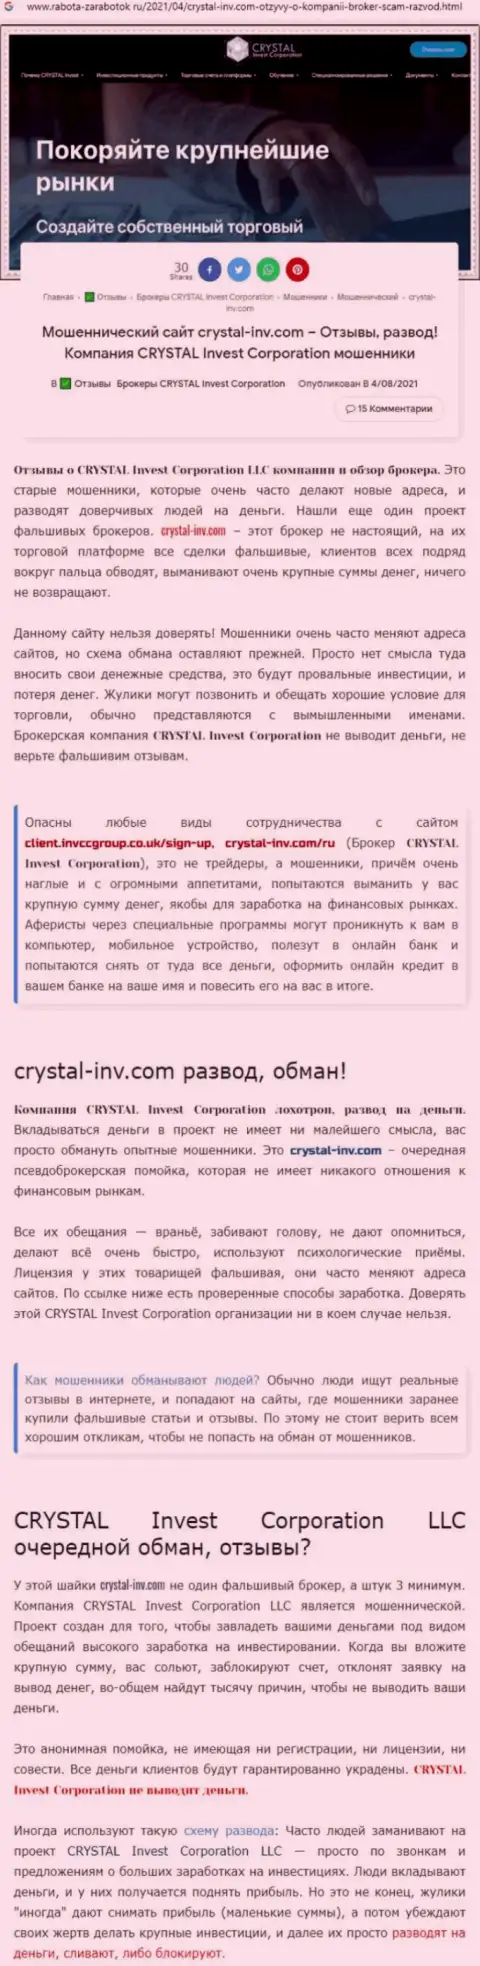 Материал, разоблачающий контору Crystal Invest Corporation, который взят с web-портала с обзорами разных контор